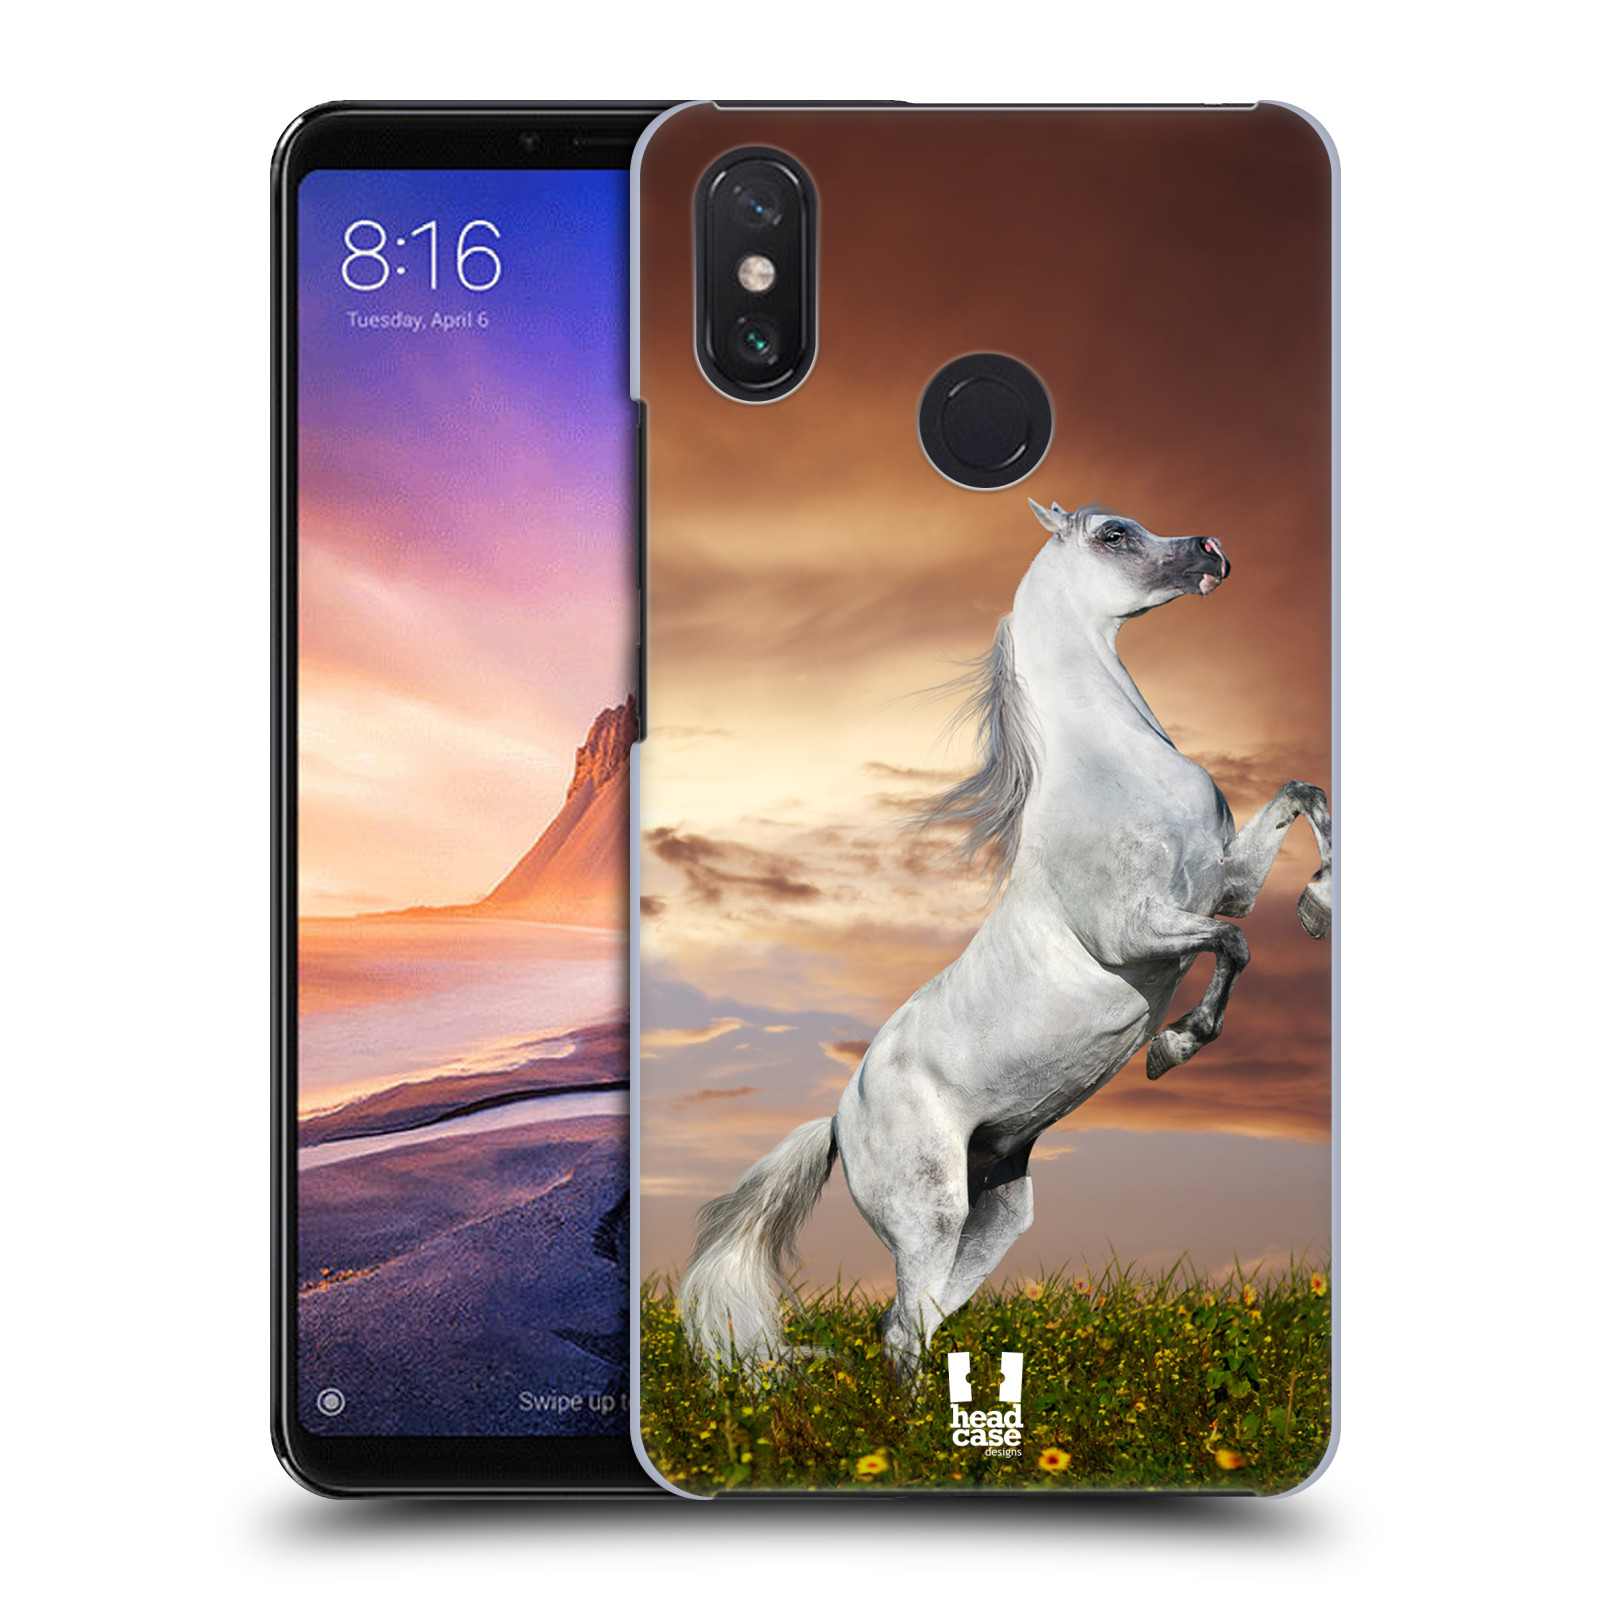 Zadní obal pro mobil Xiaomi Mi Max 3 - HEAD CASE - Svět zvířat divoký kůň